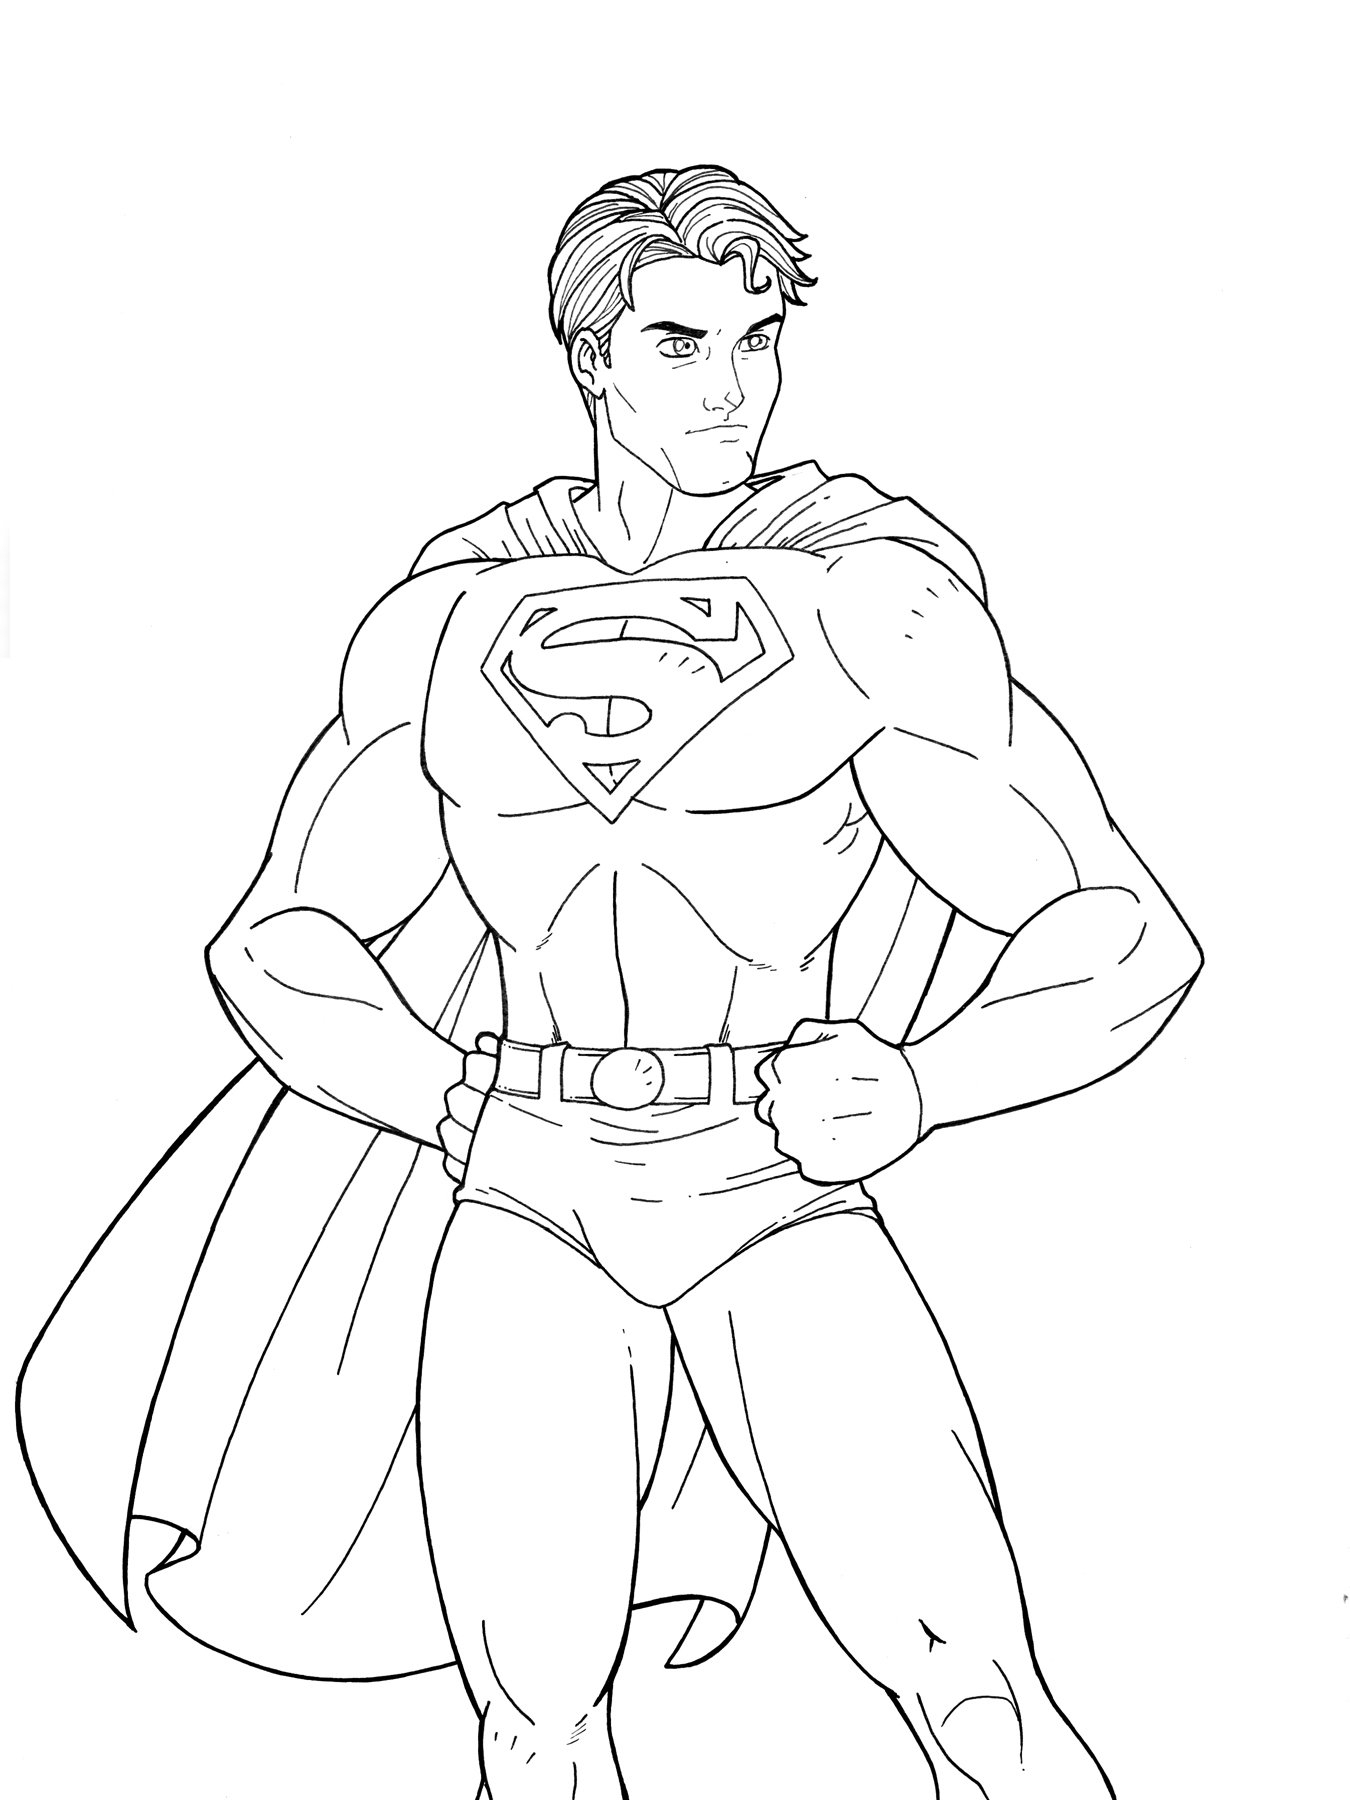 Superheroes Drawings | Free high quality drawings at GetDrawings.com